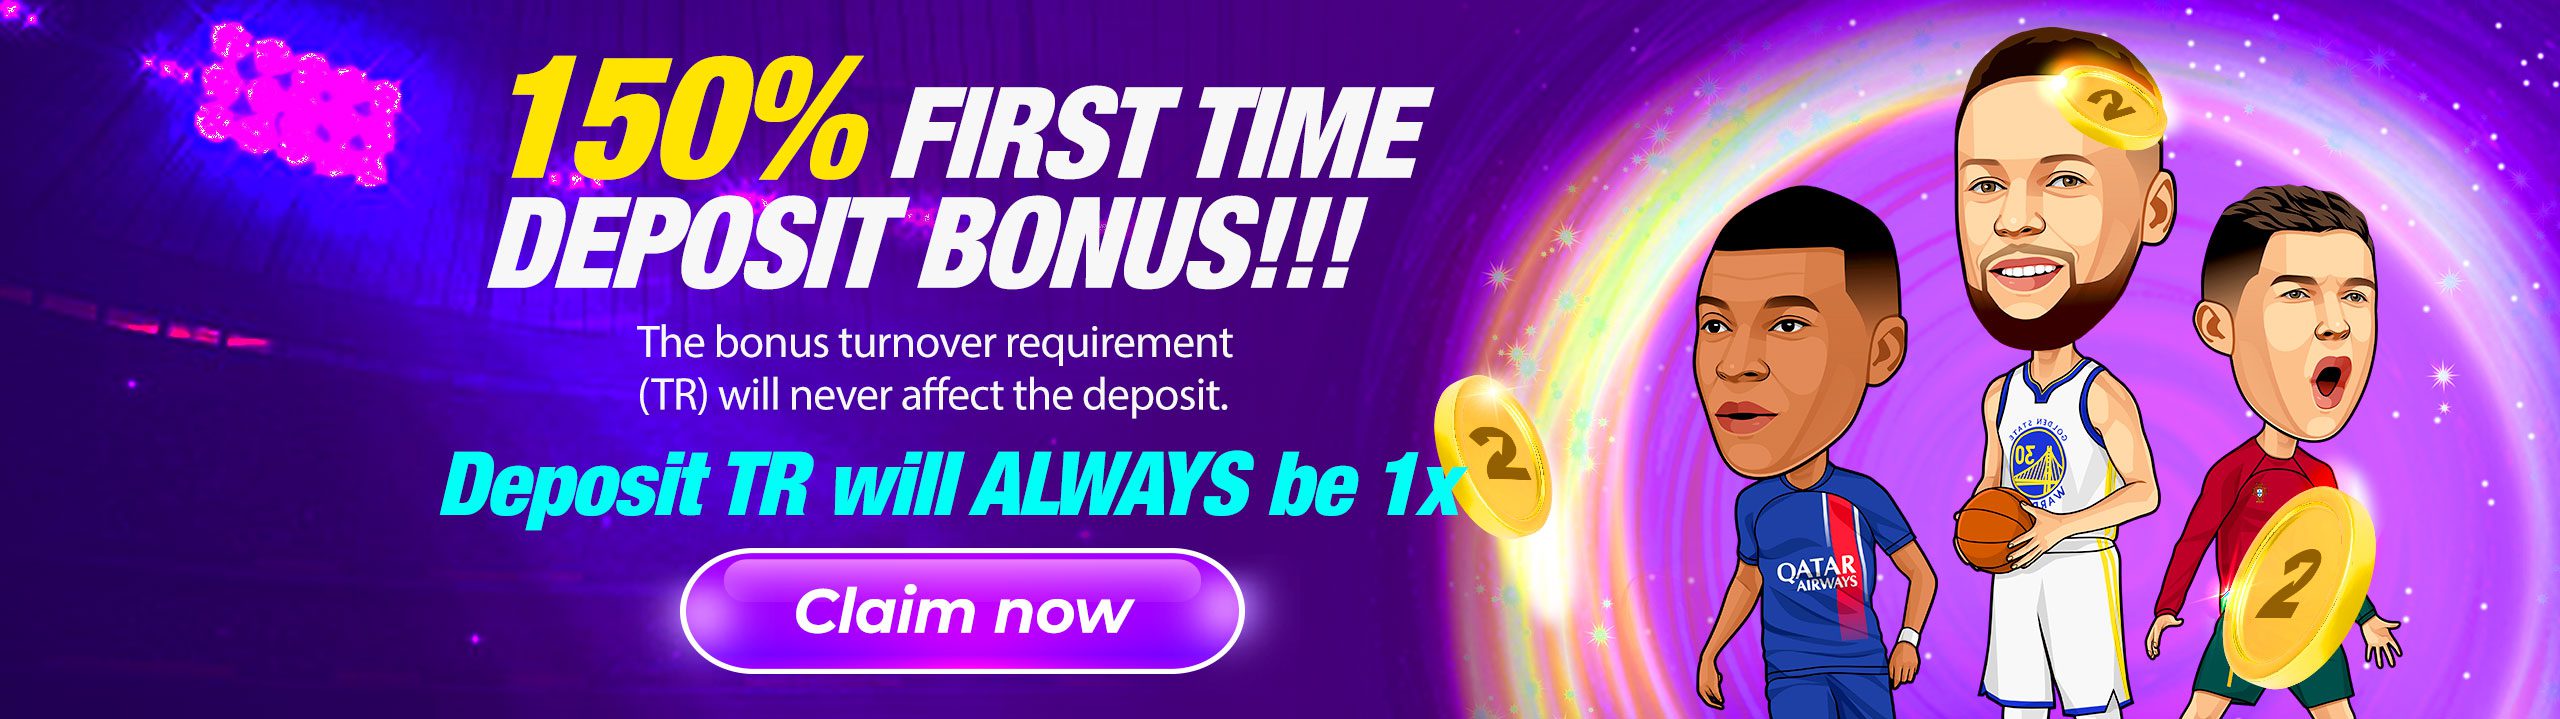 150% First Time Deposit Bonus!